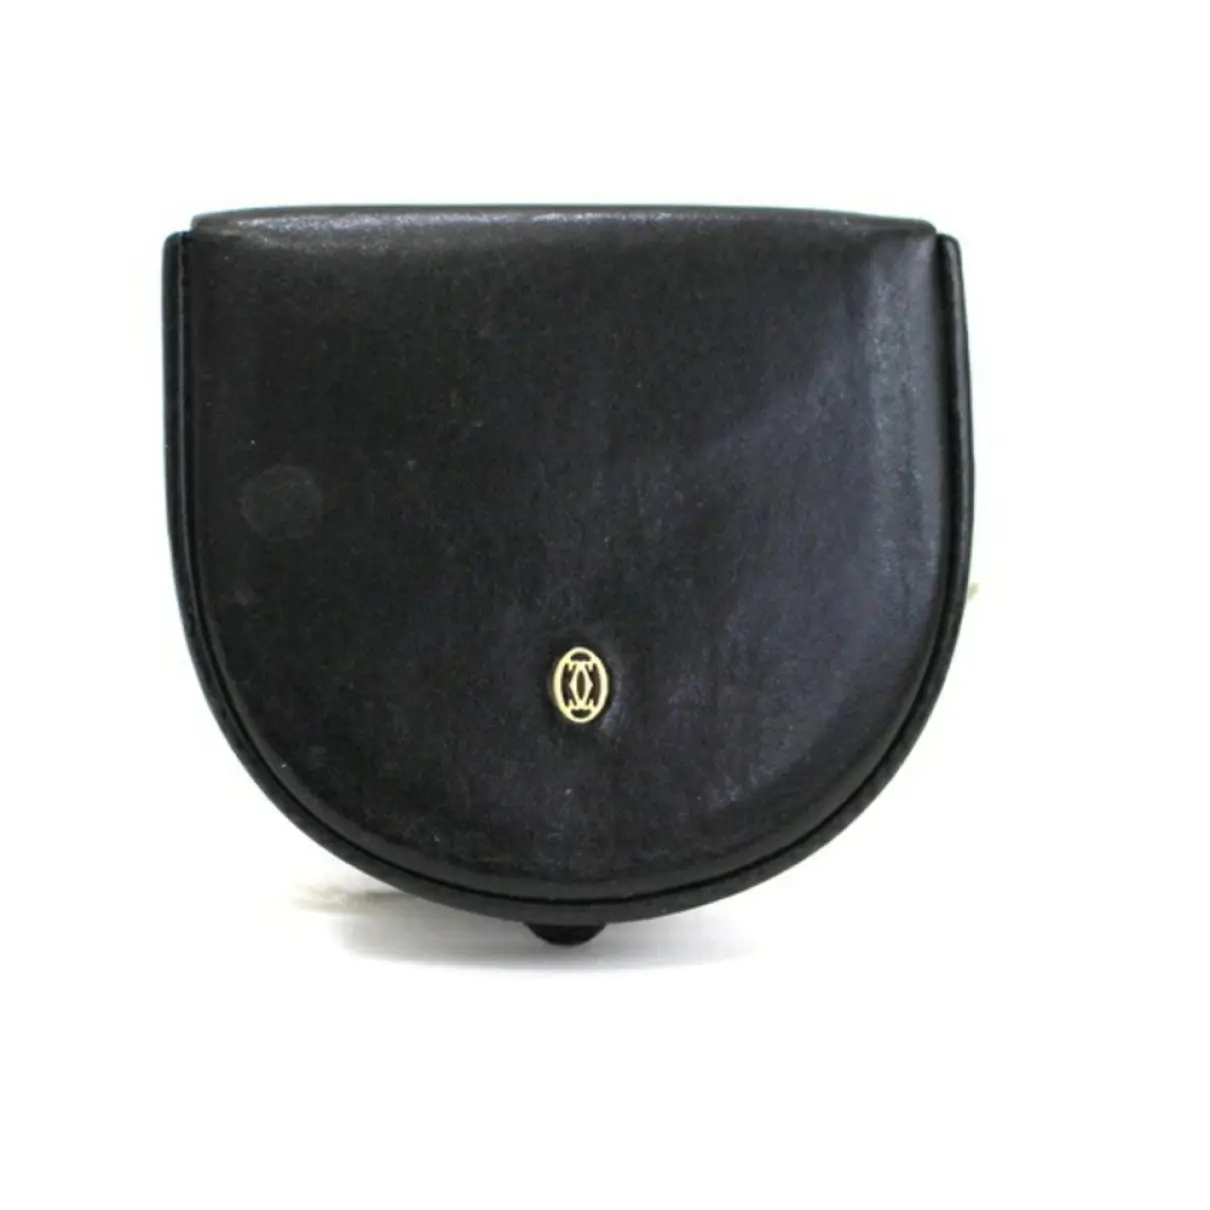 Leather purse Cartier